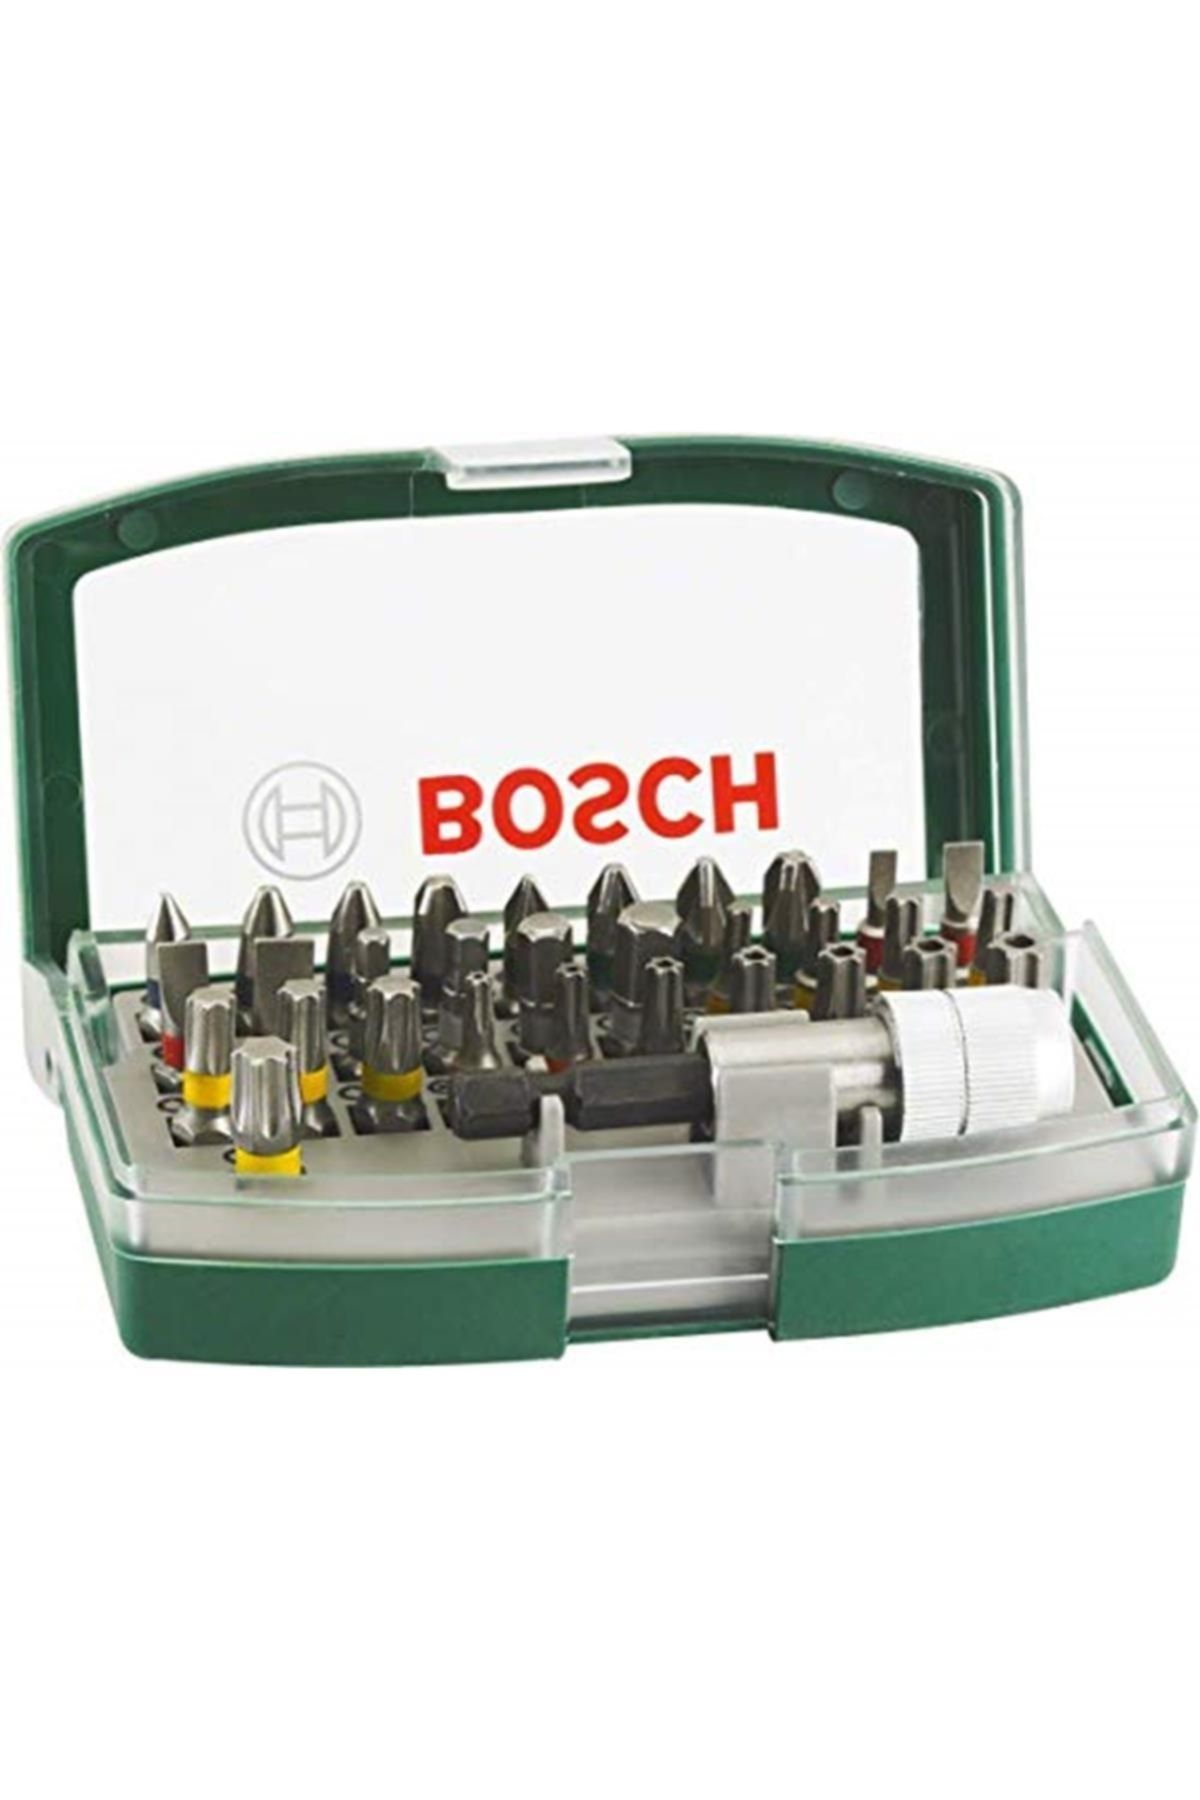 Bosch Marka: Uç Seti, Yeşil, 32 Adet Kategori: Tornavida